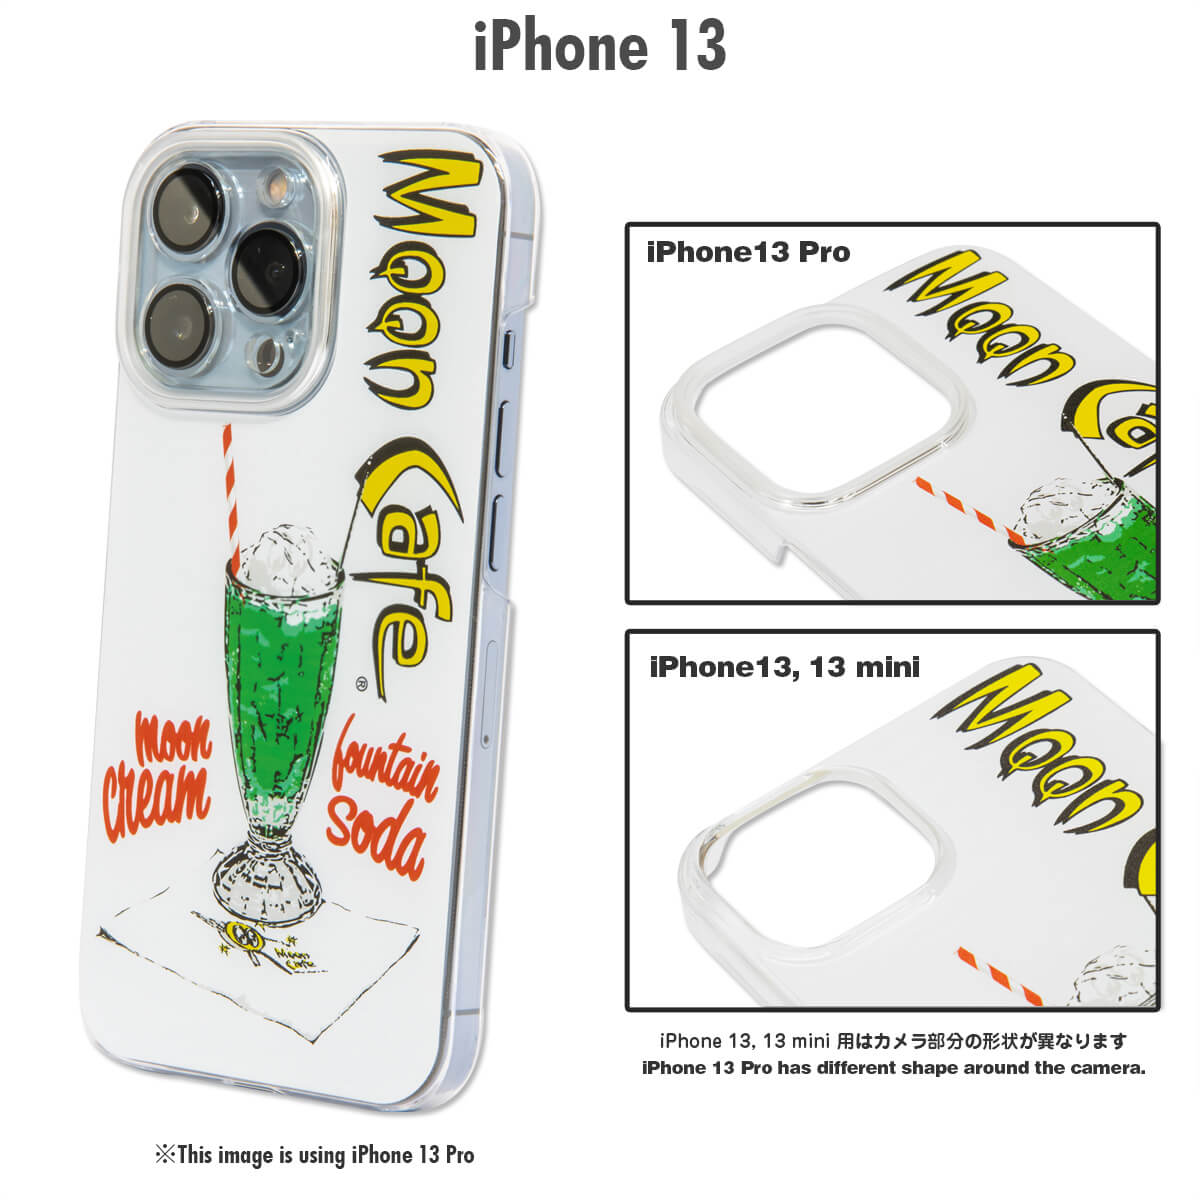 ムーンアイズ MOON Cafe クリームソーダ iPhone 13 ハードケース